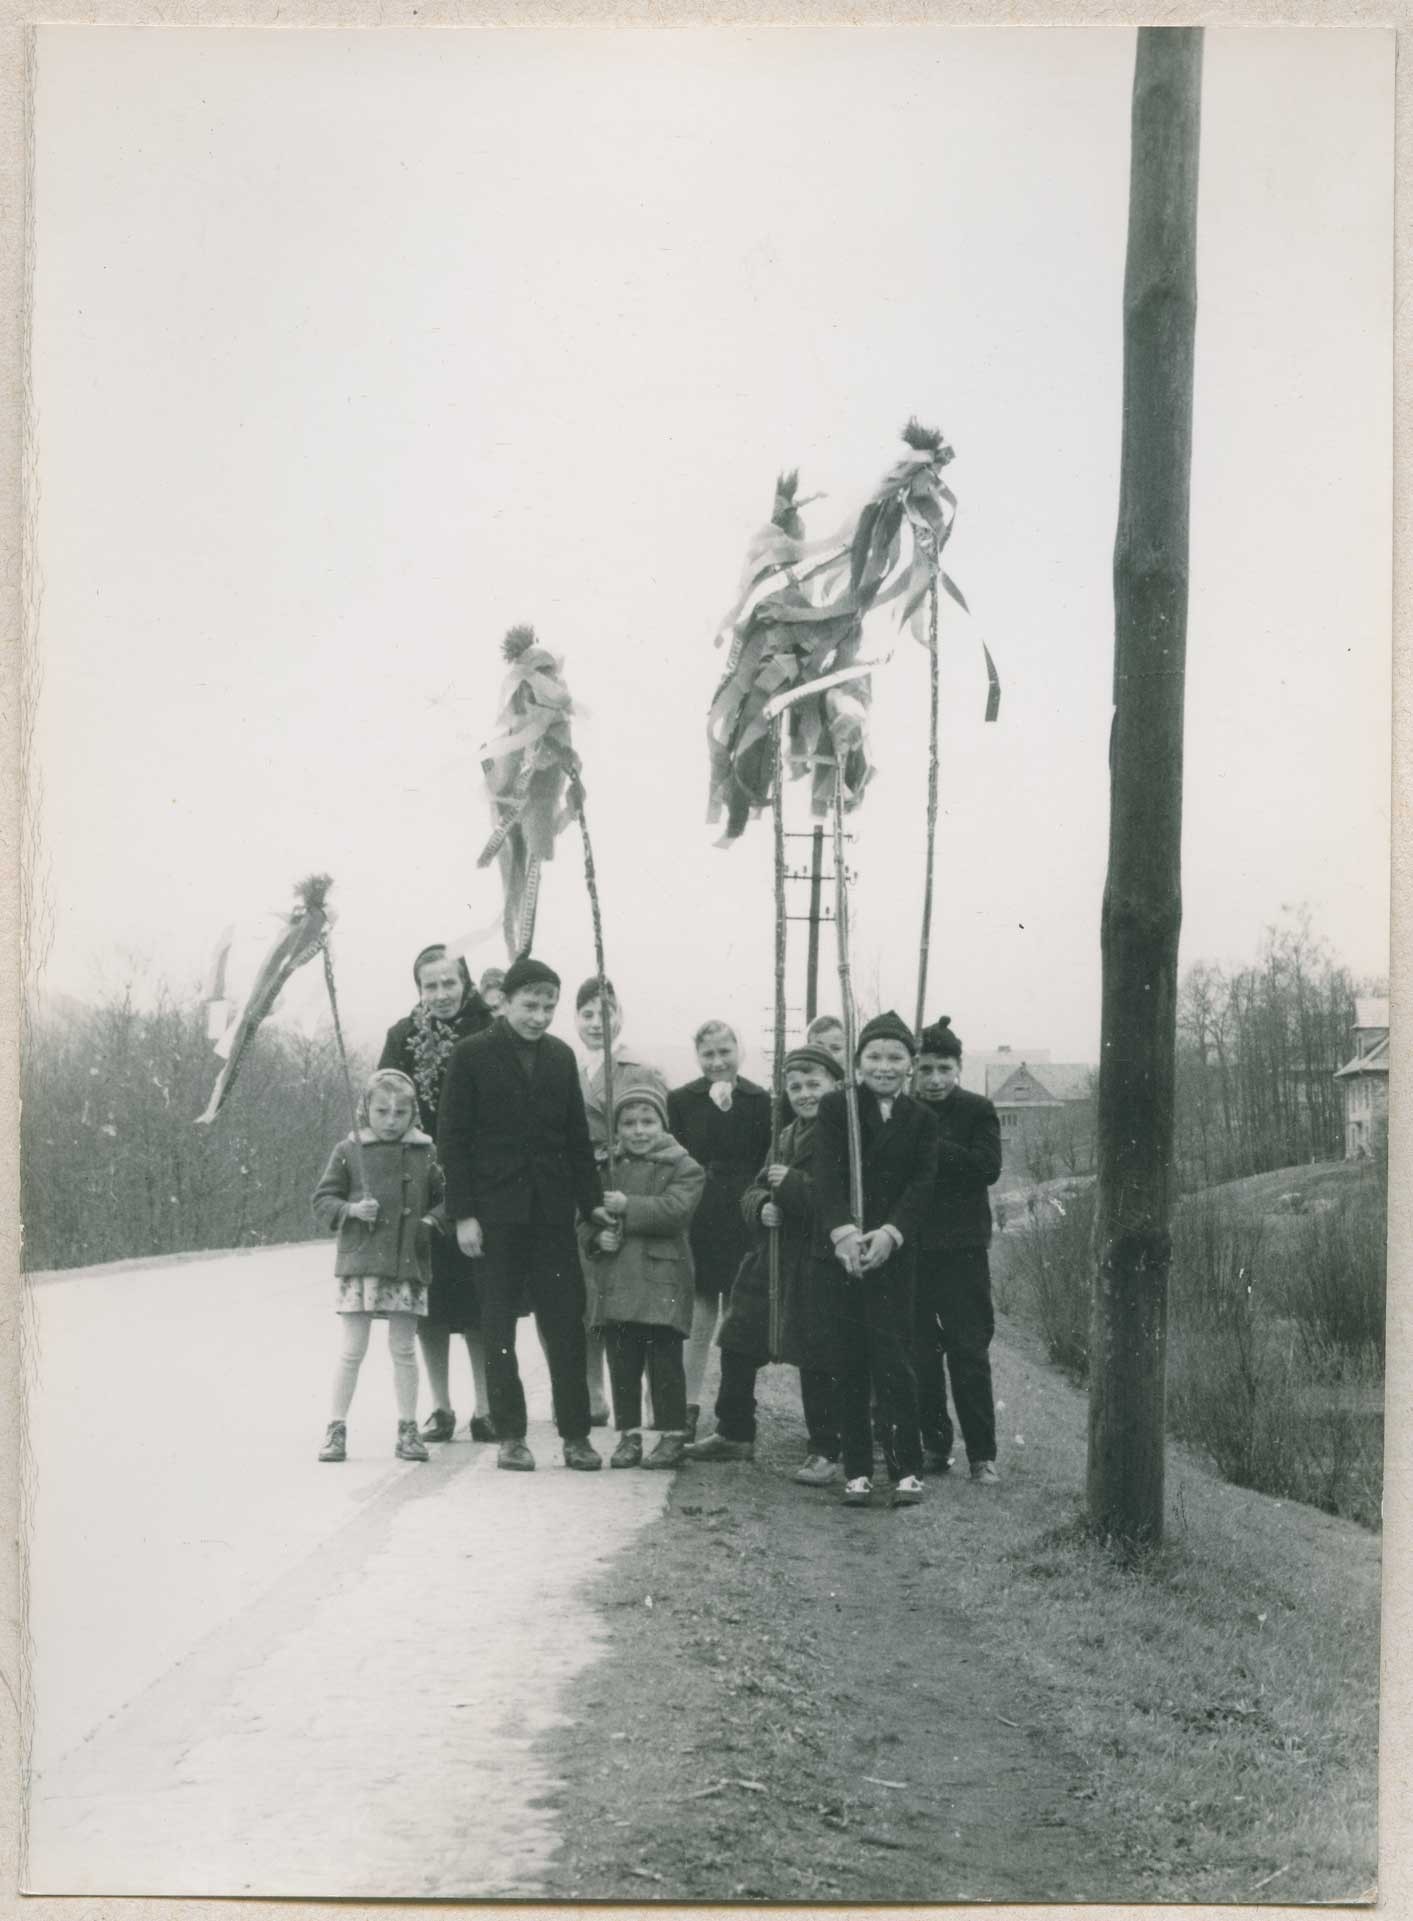 czarnobiałe zdjęcie, grupka dzieci z wysokimi palmami pozuje do zdjęcia przy drodze